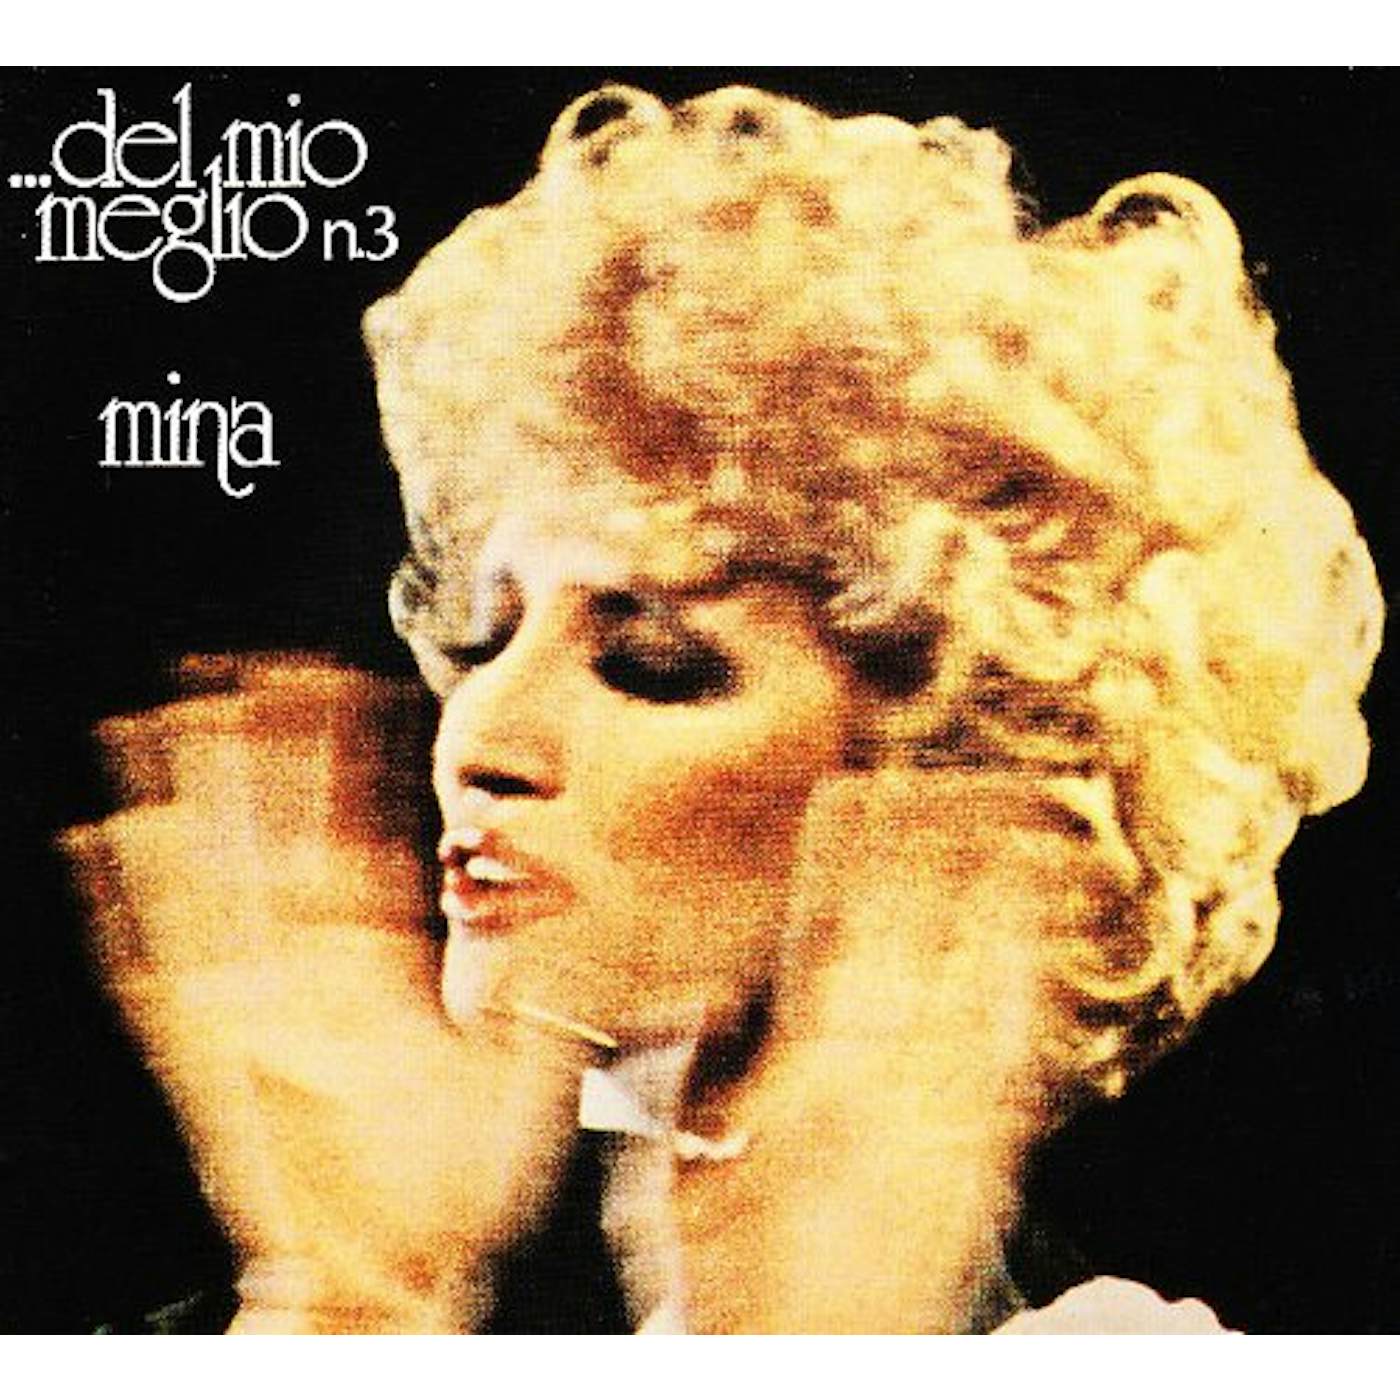 Mina DEL MIO MEGLIO NO 3 CD